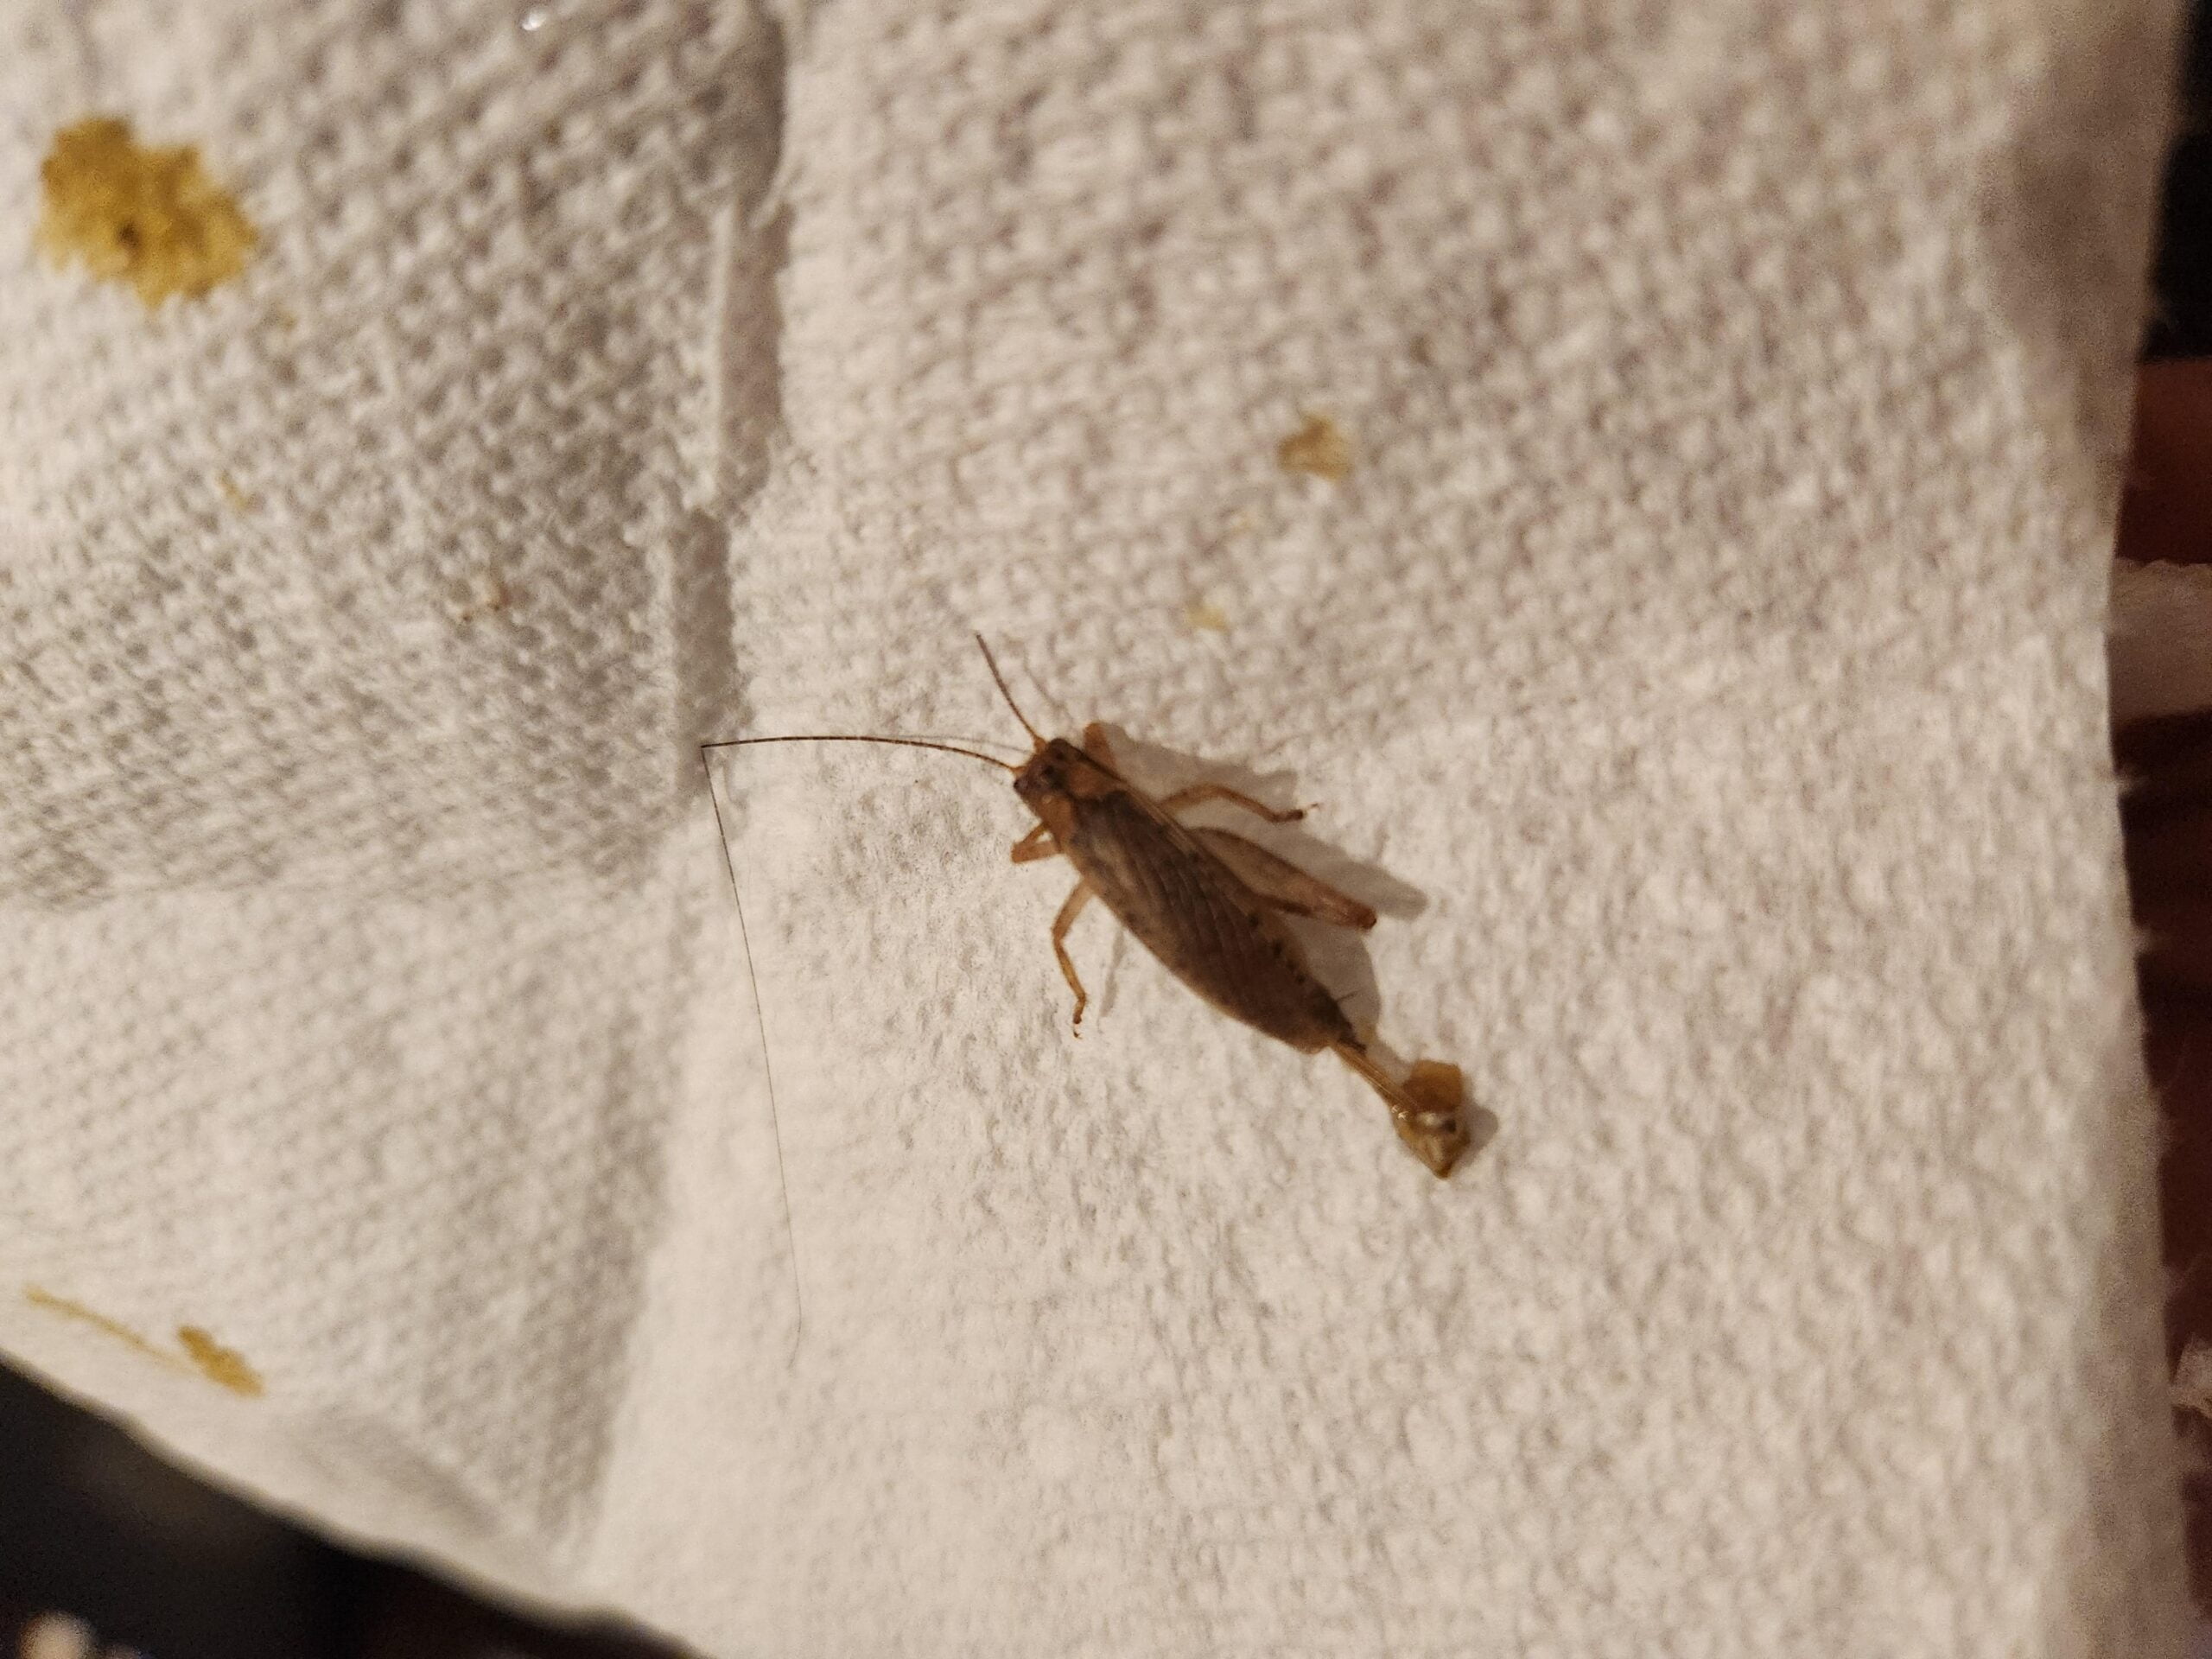 Cockroach Vs Cricket?